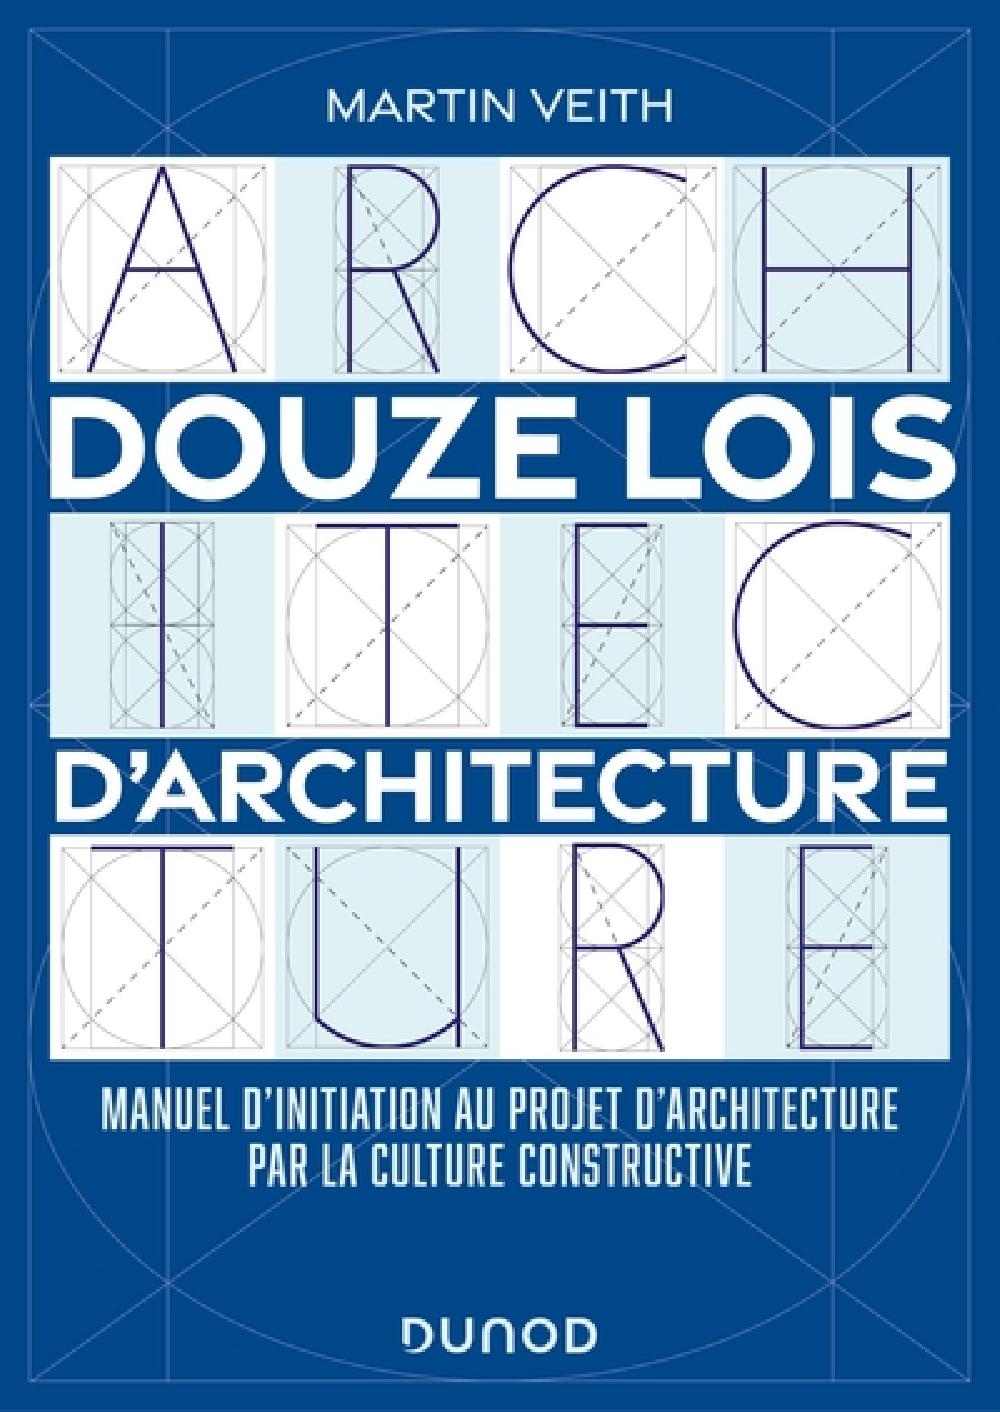 Douze lois d'architecture - Manuel d'initiation au projet d'architecture par la culture constructive